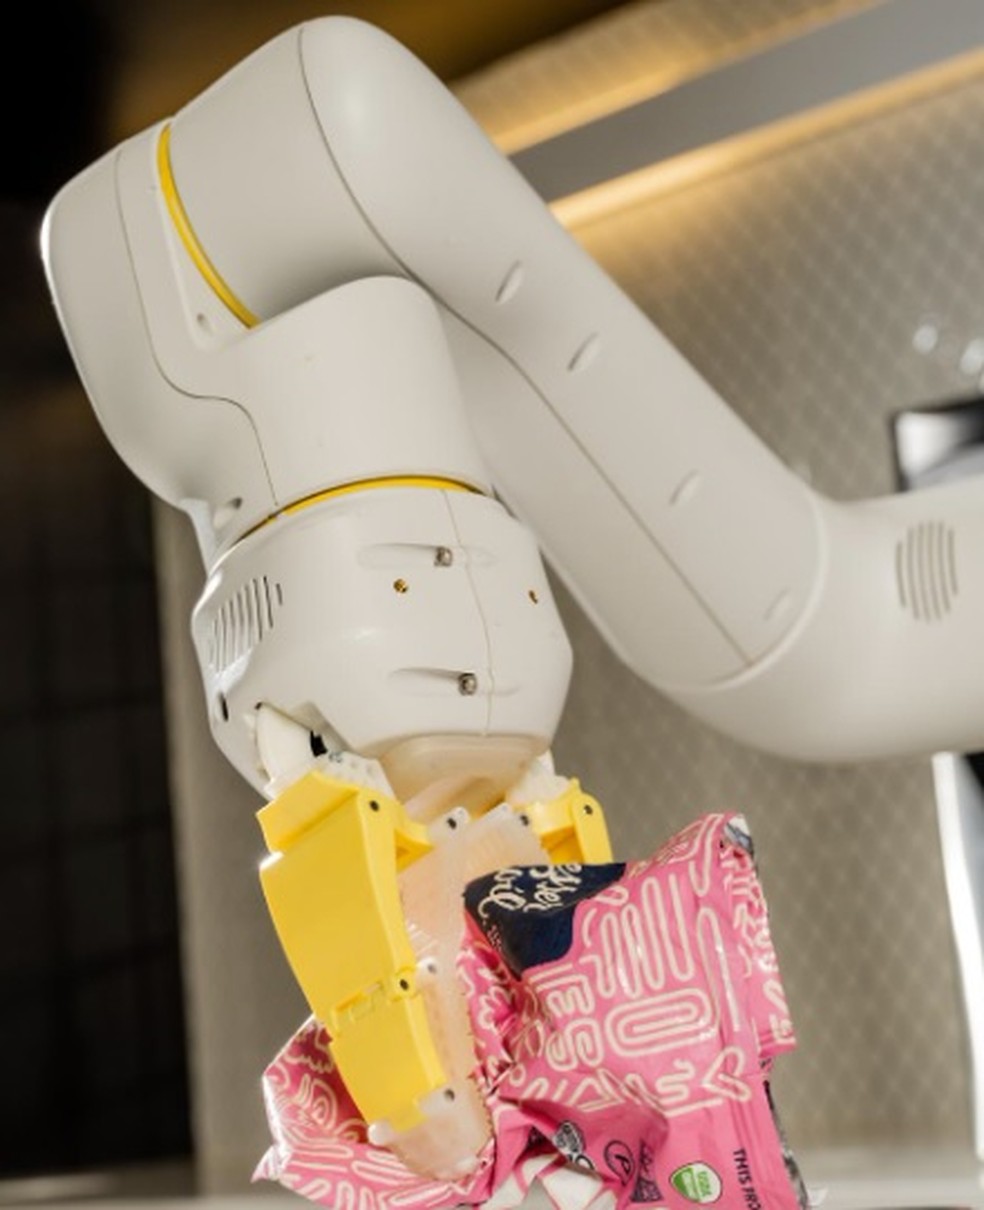 Robô prevê cenário em que inteligência artificial manipula humanos -  Canaltech